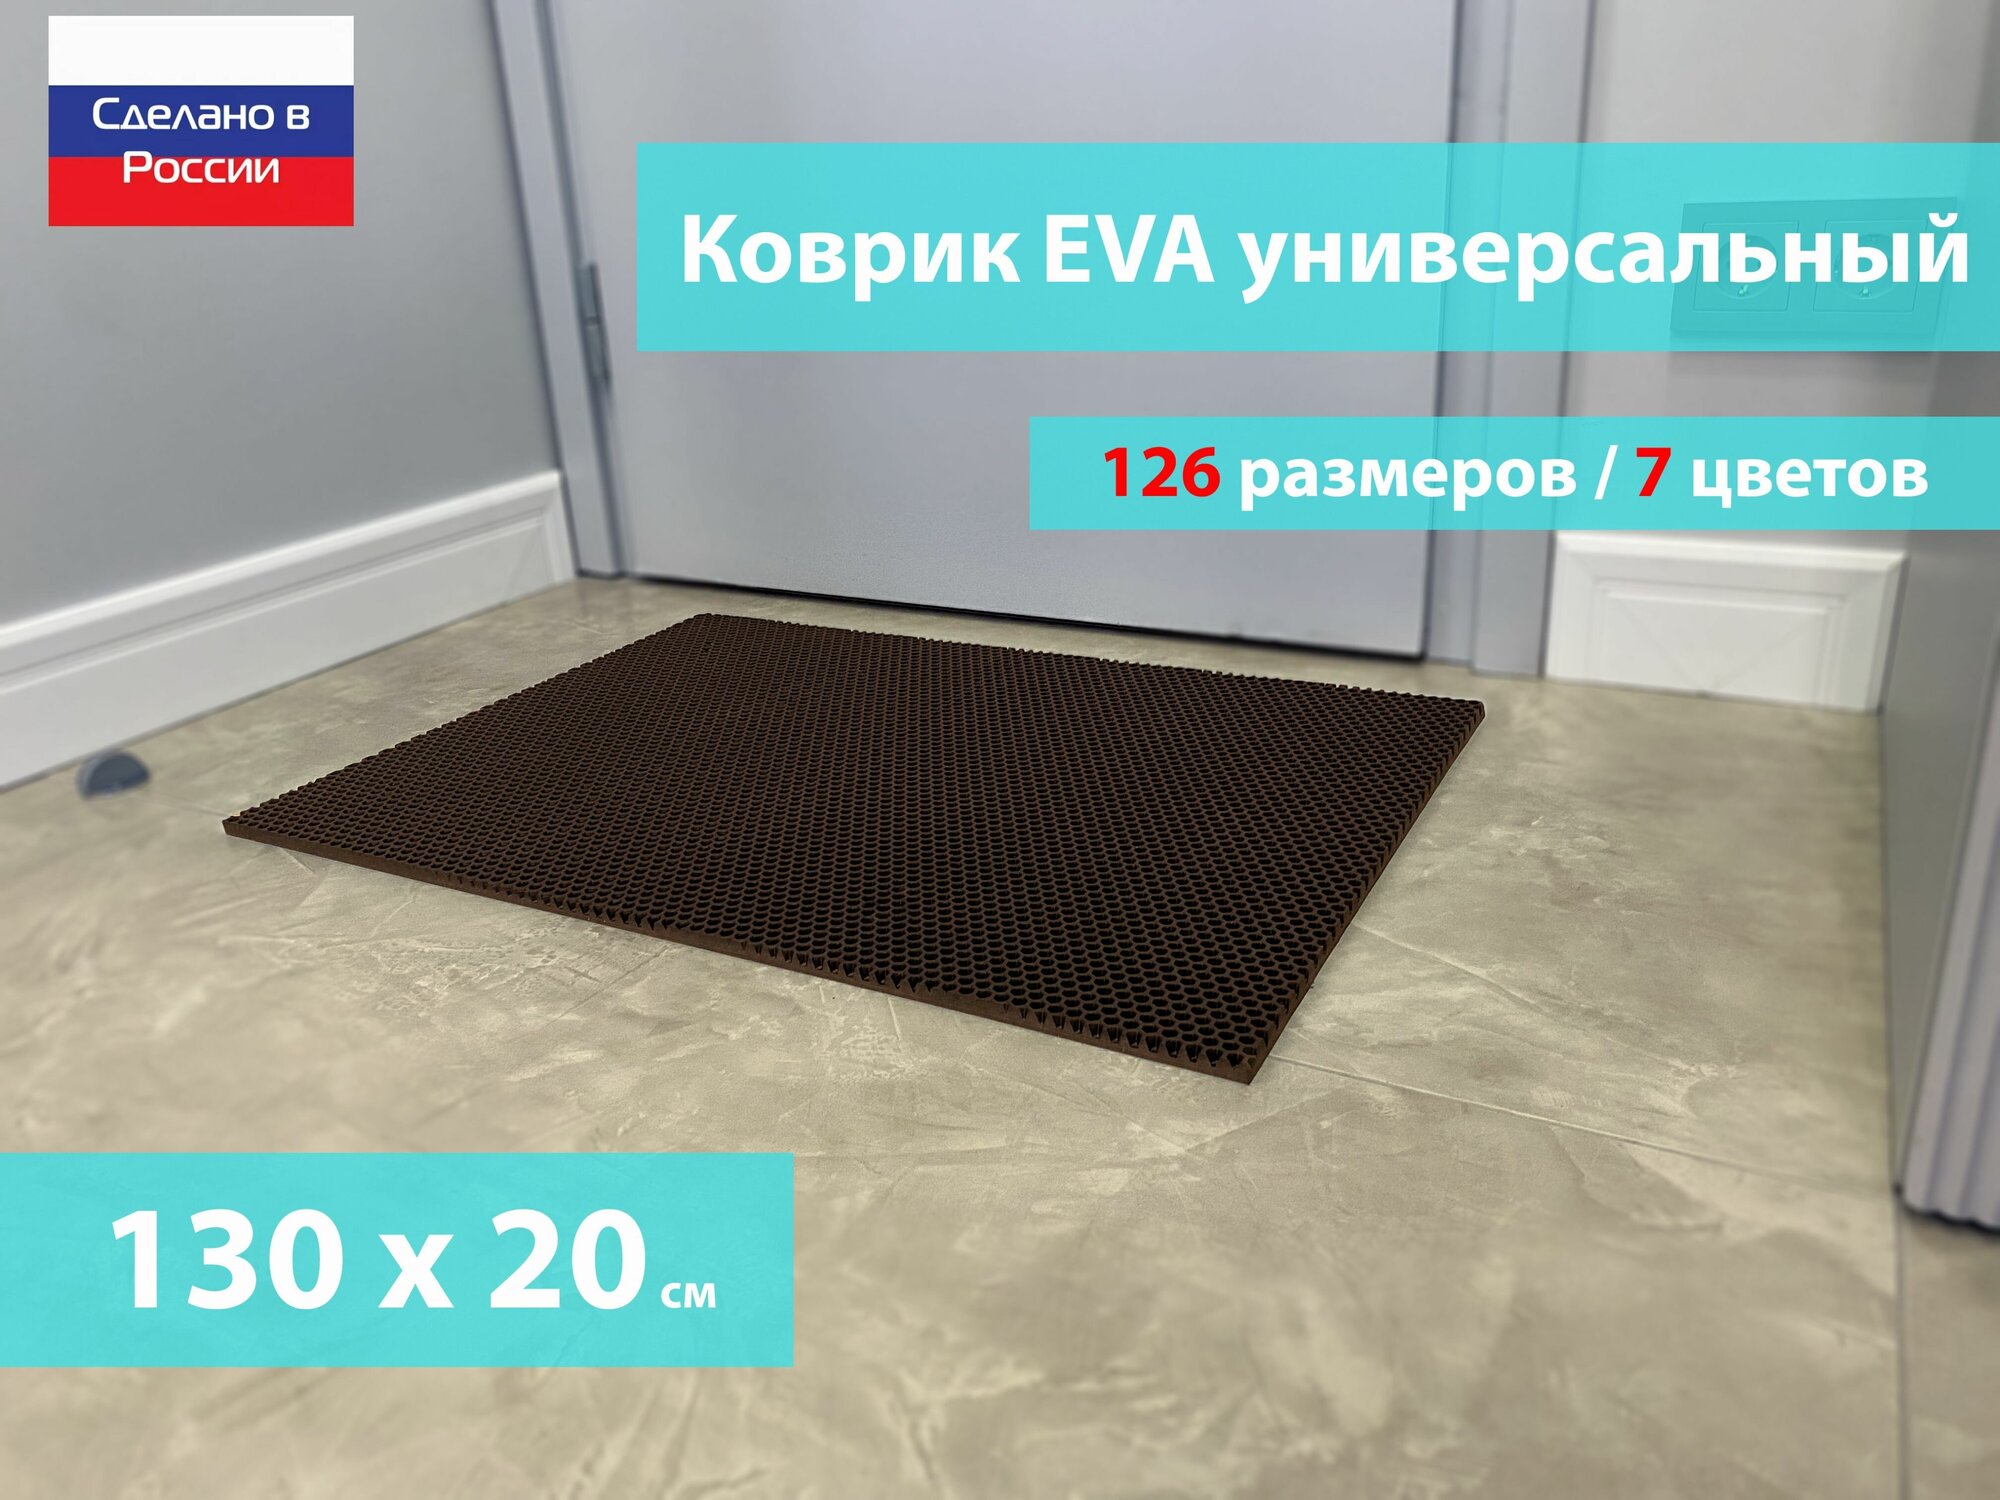 Коврик придверный EVA (ЕВА) в прихожую для обуви / Ковер ЭВА на пол перед дверью/ коричневый / размер 130 х 20 см - фотография № 1